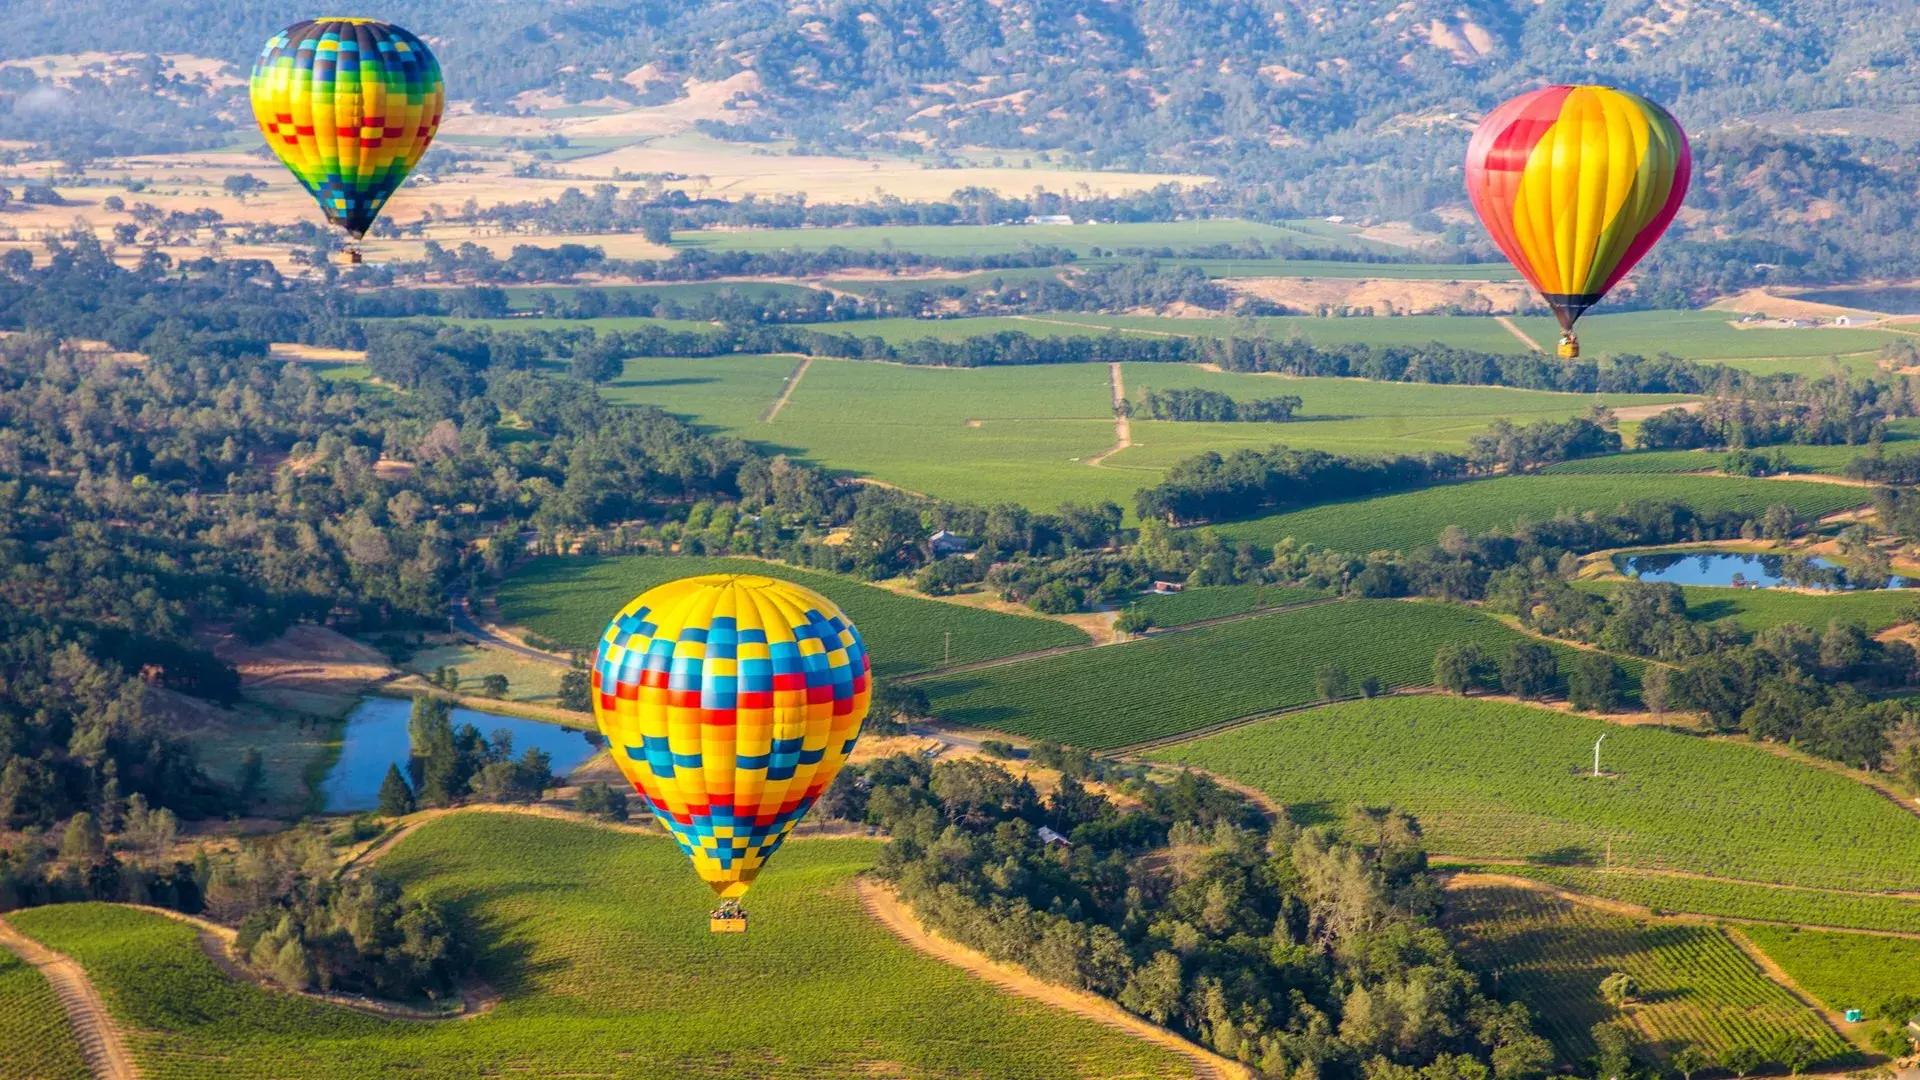 Luftballons starten in Pleasant Hill, Kalifornien